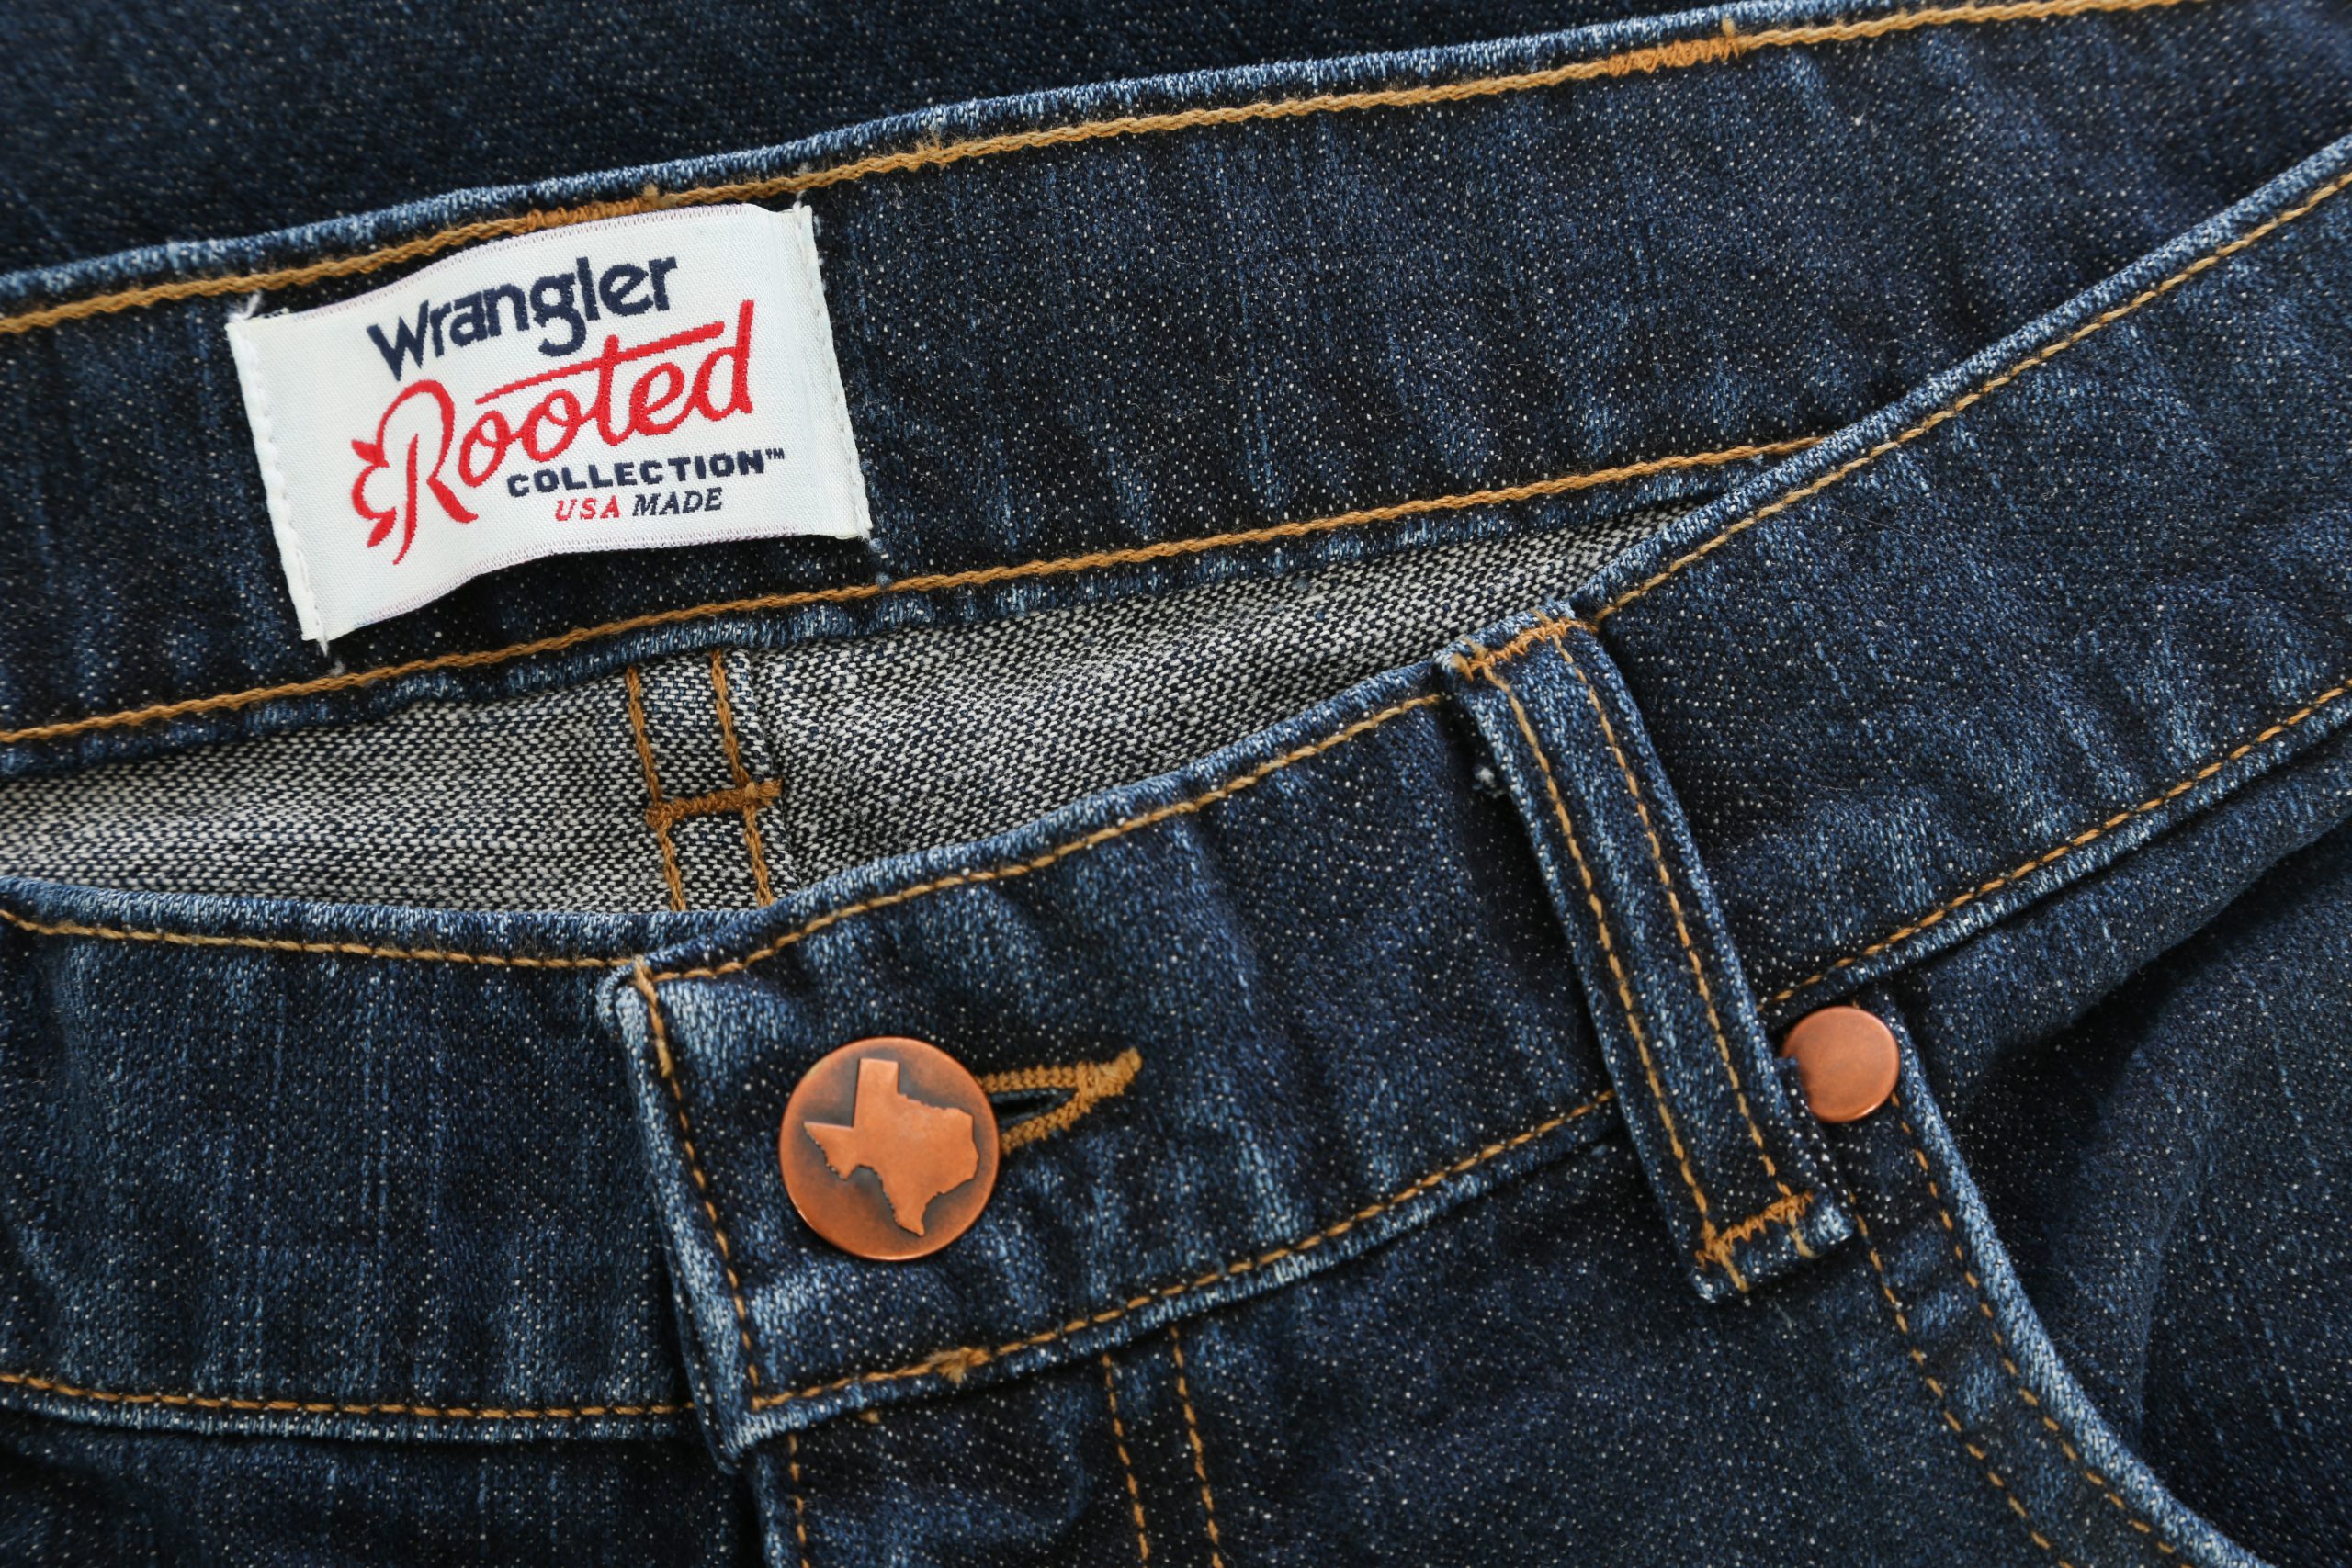 wrangler jeans company